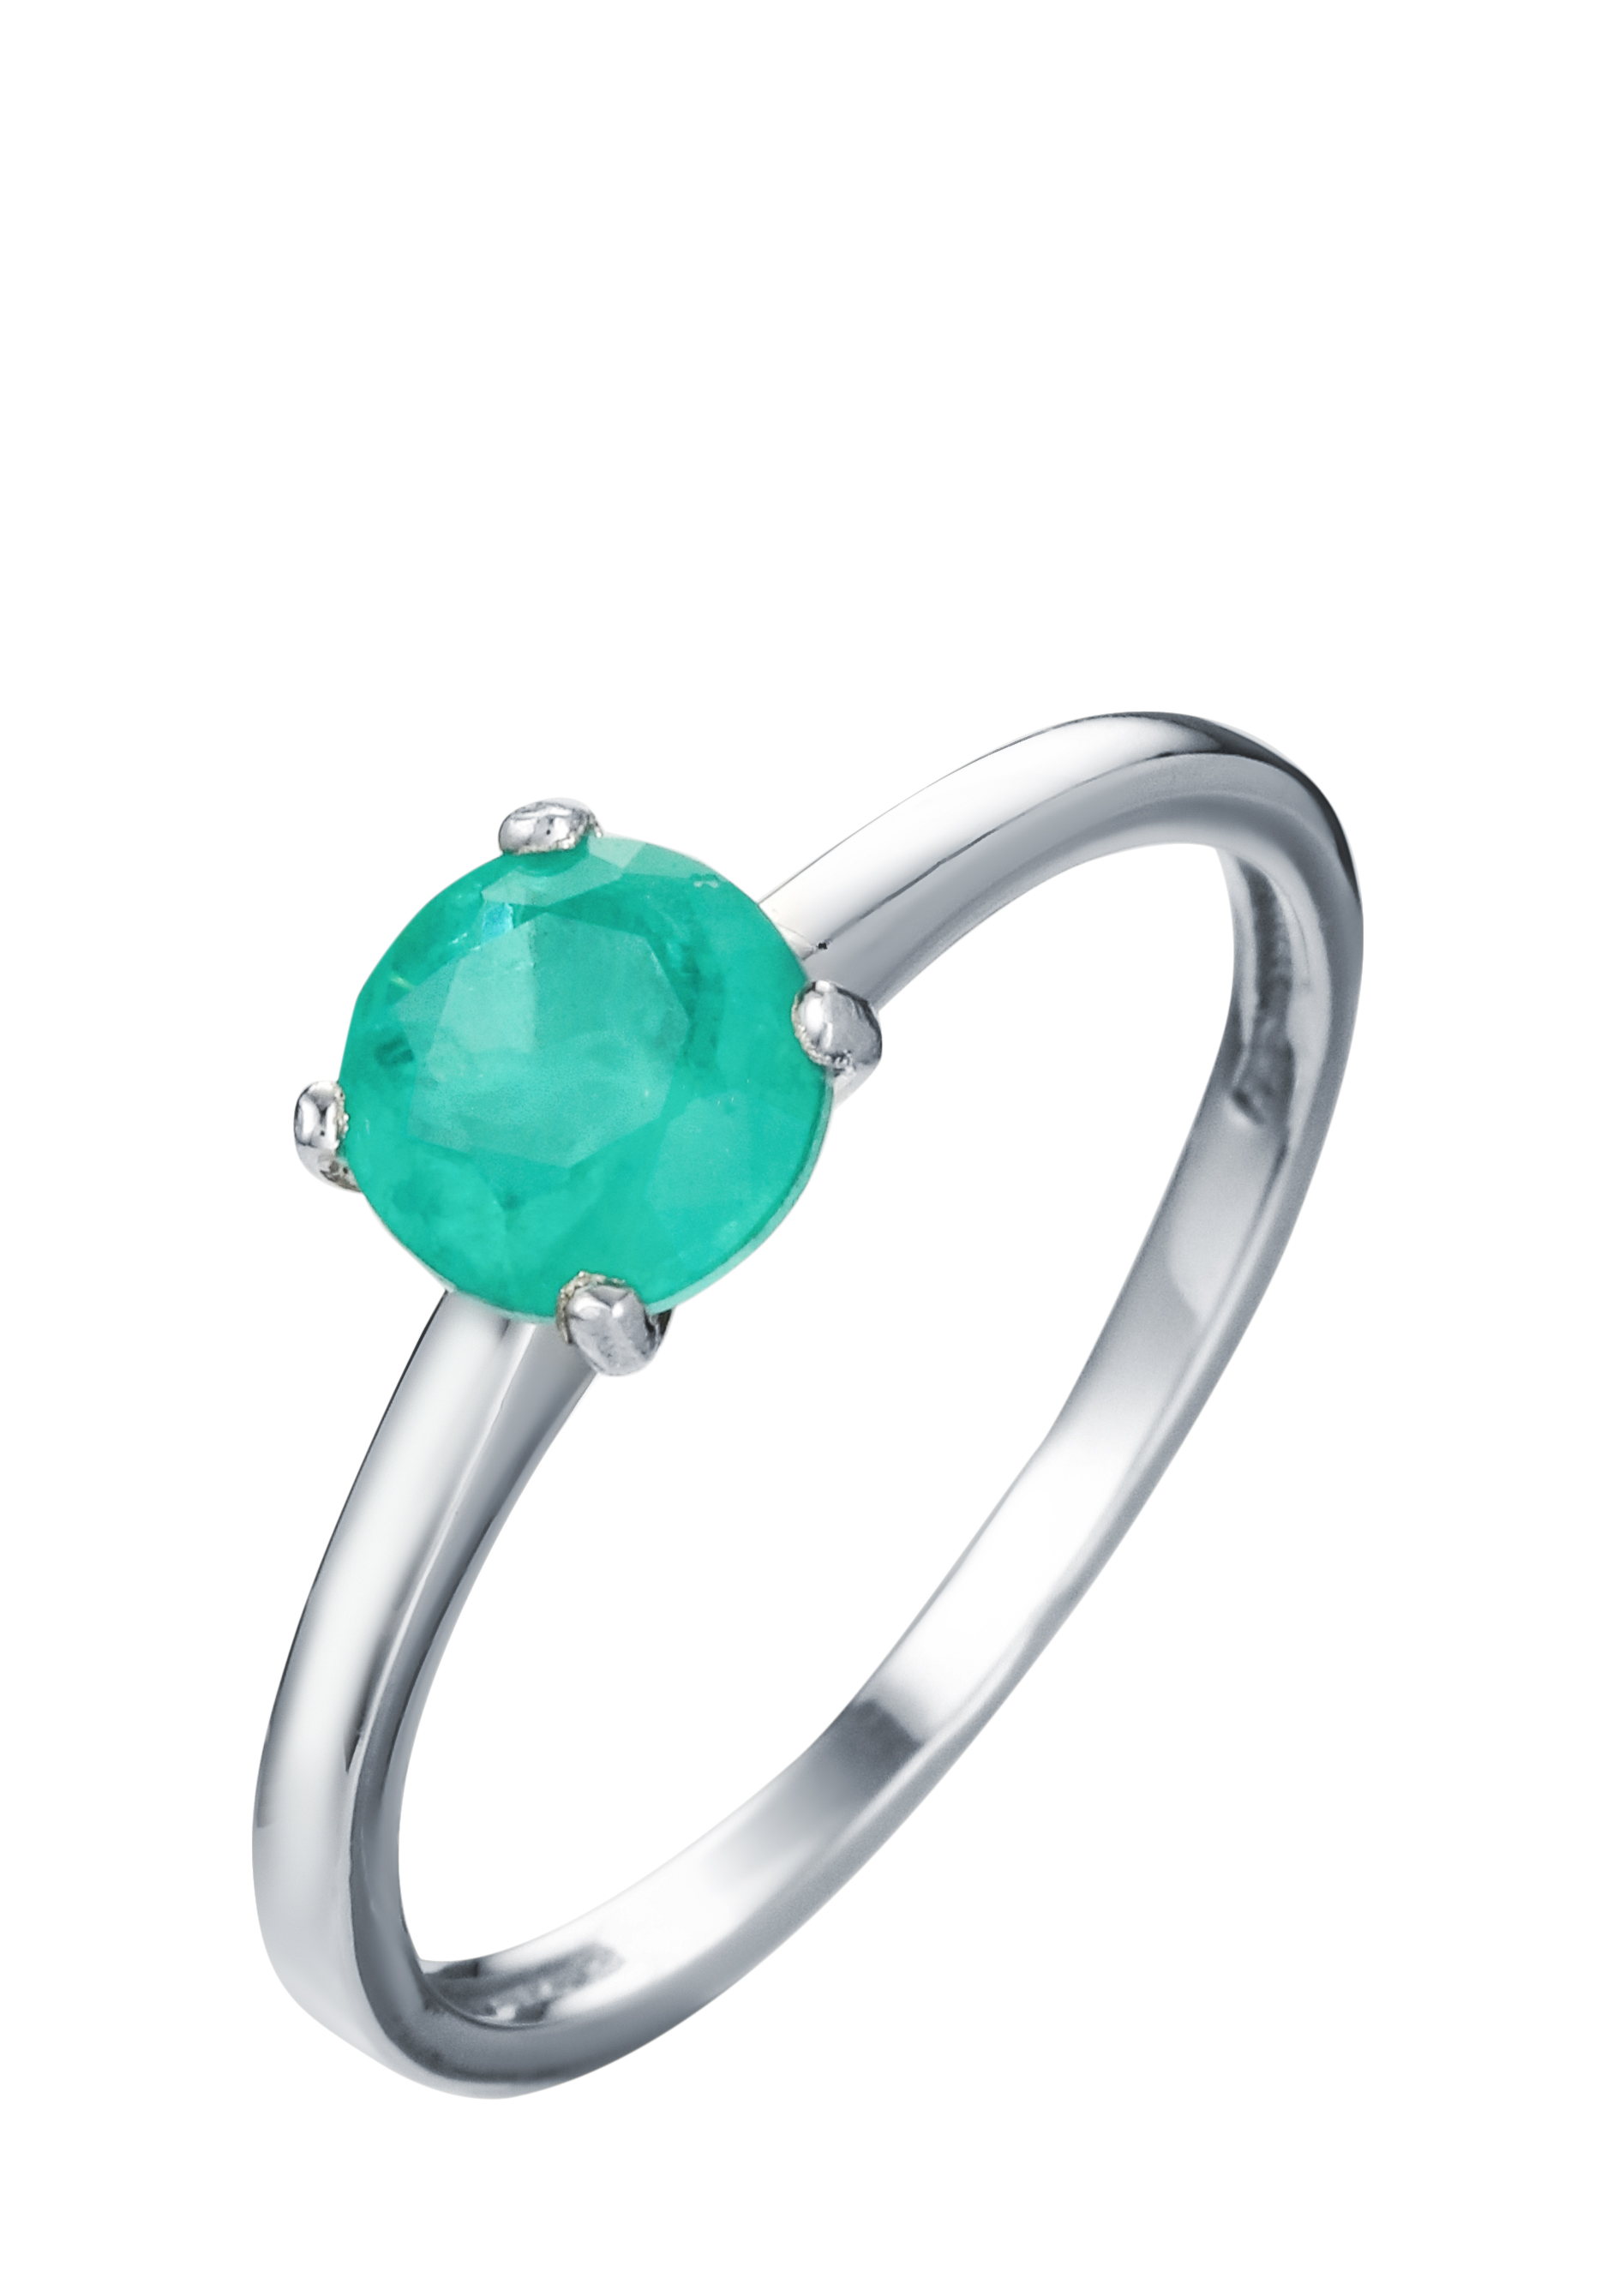 Кольцо серебряное "Сокровенная мечта" Nouvelle, размер 17, цвет зеленый солитер - фото 1